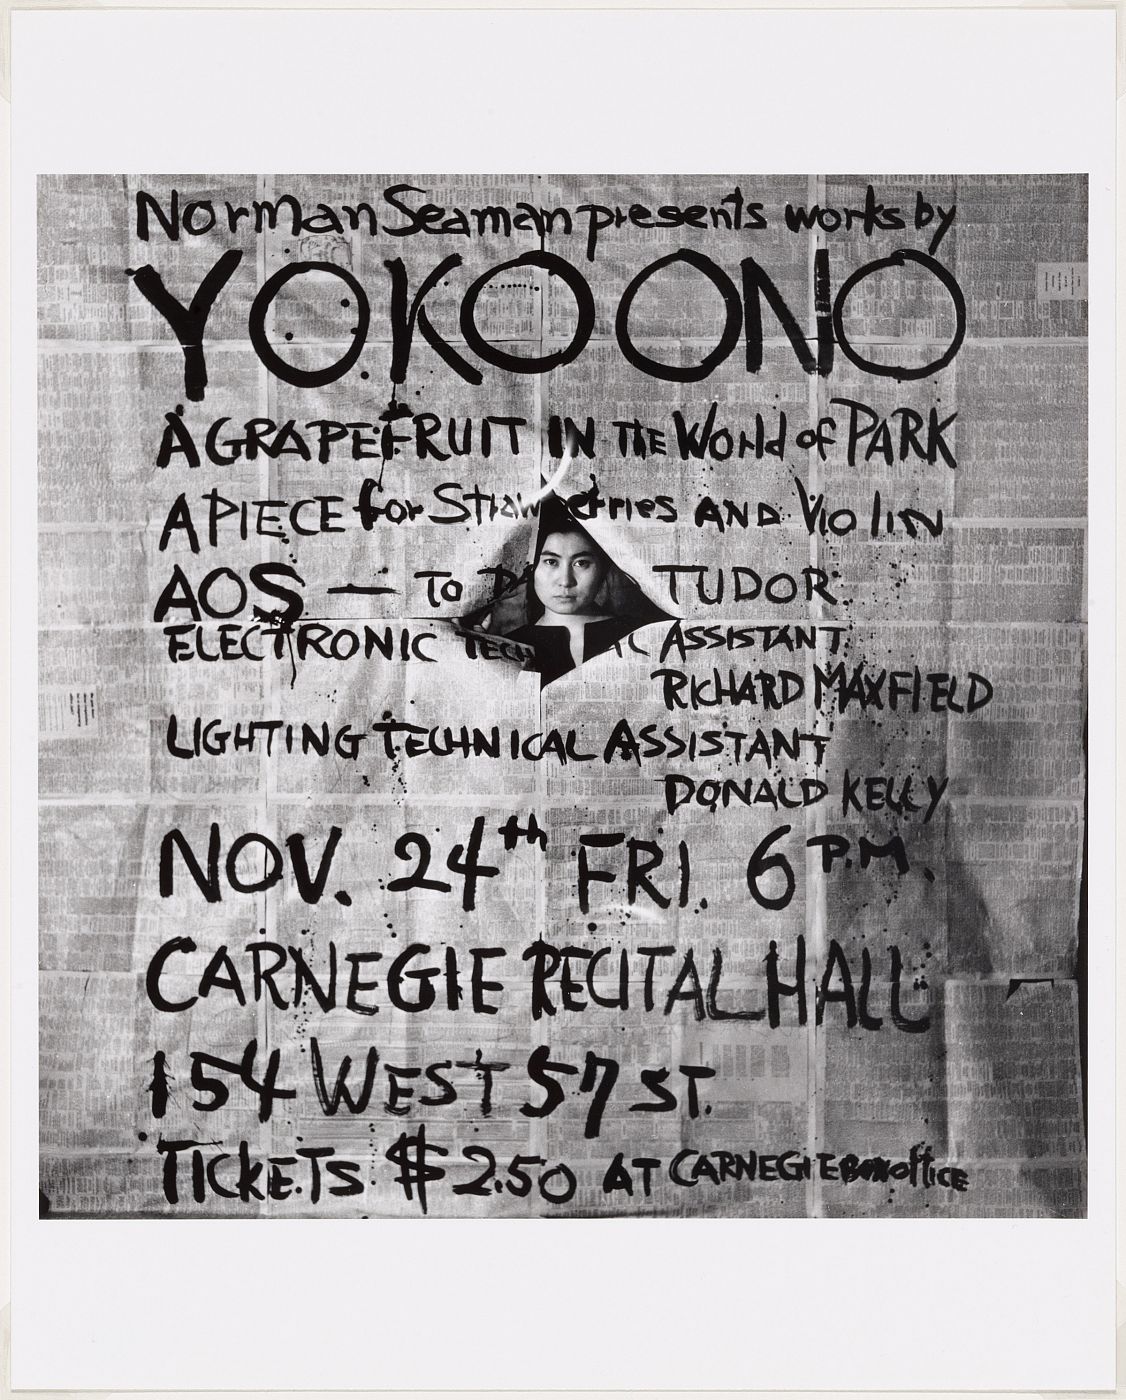 Póster para recital en el Carnegie Hall, Yoko ono (1961)